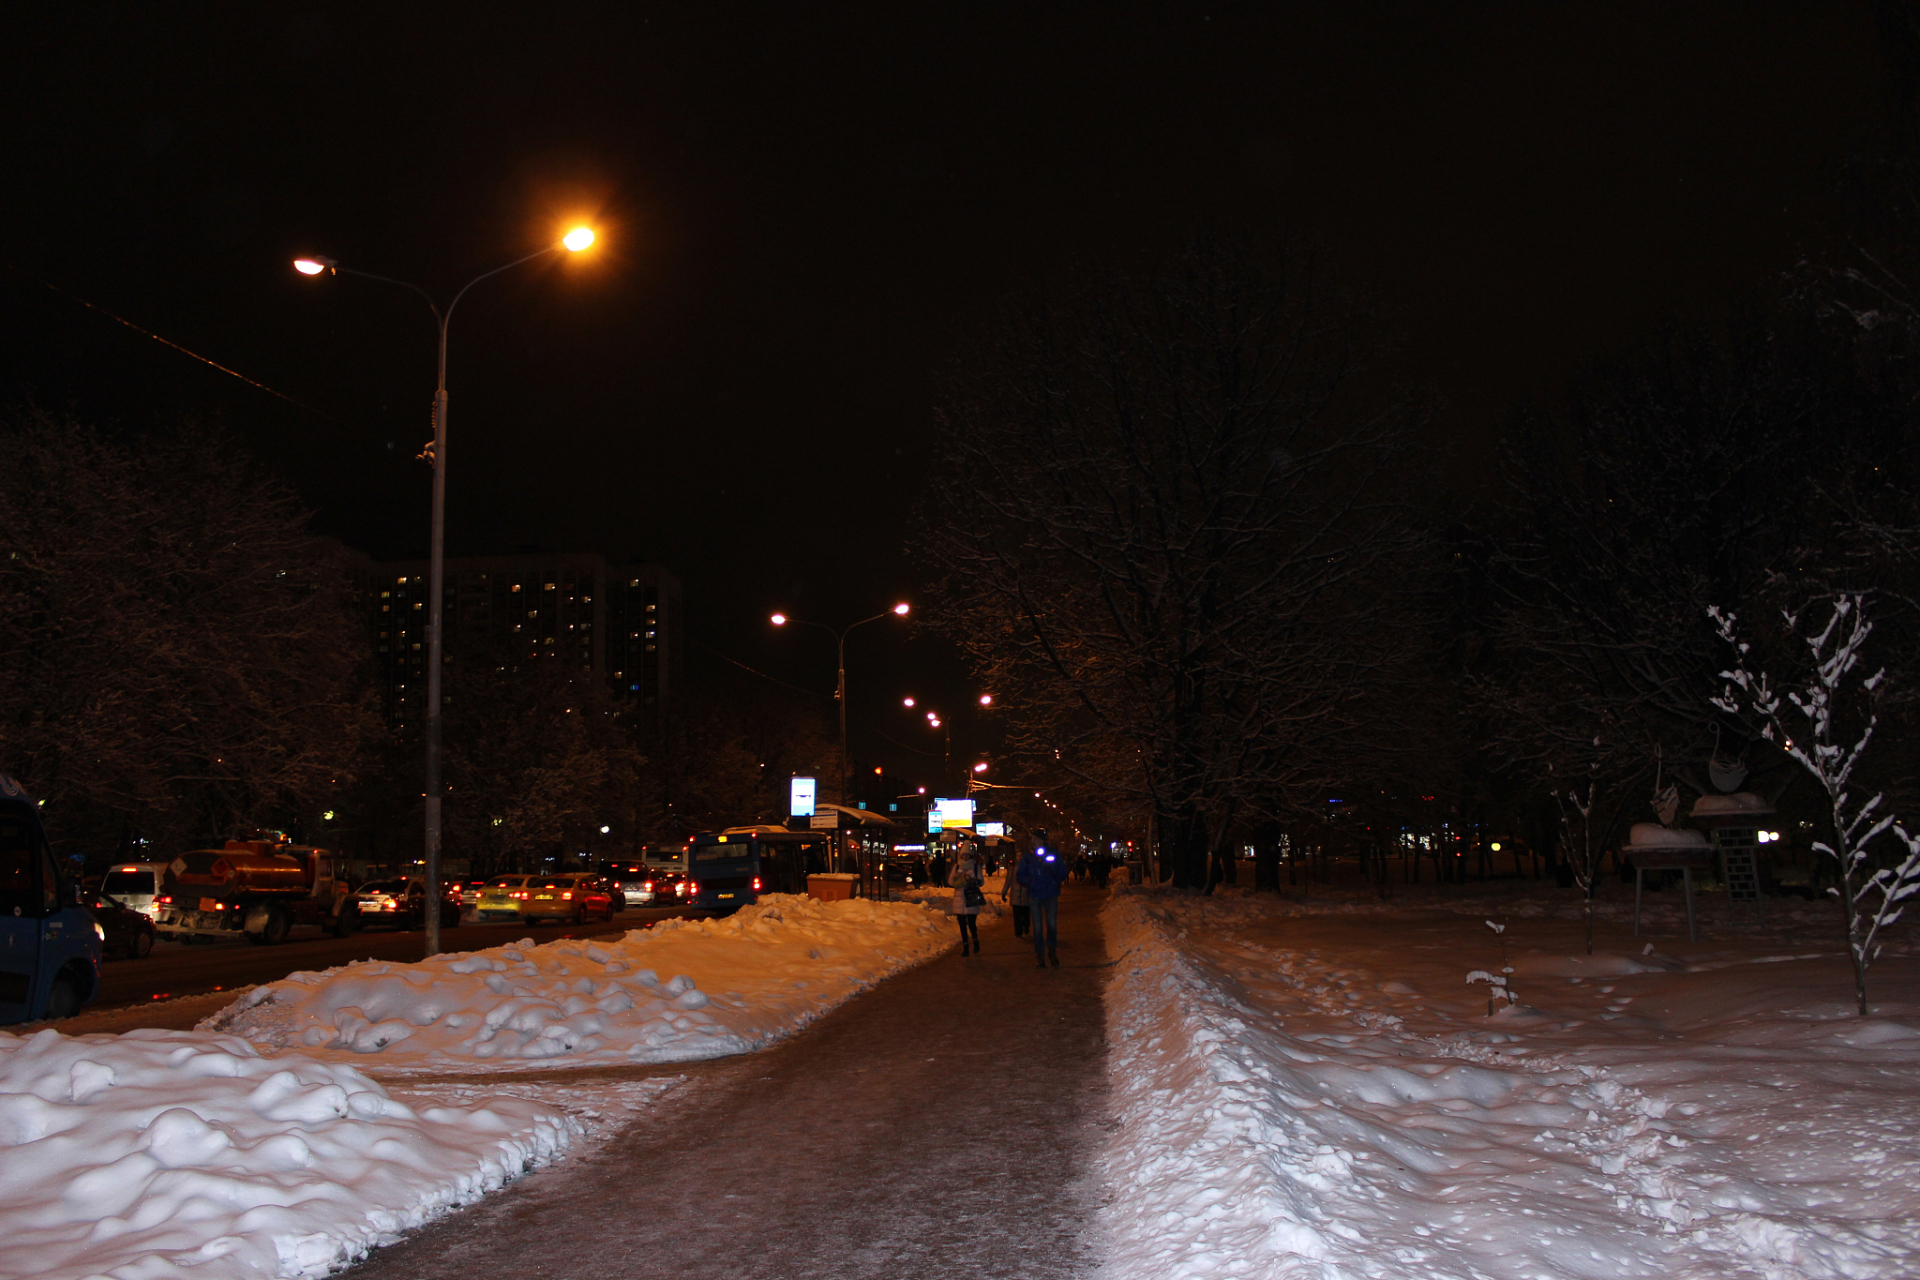 冬季的夜晚,寒风瑟瑟,街头的路灯下,一片寂静的雪地泛着淡淡的银色